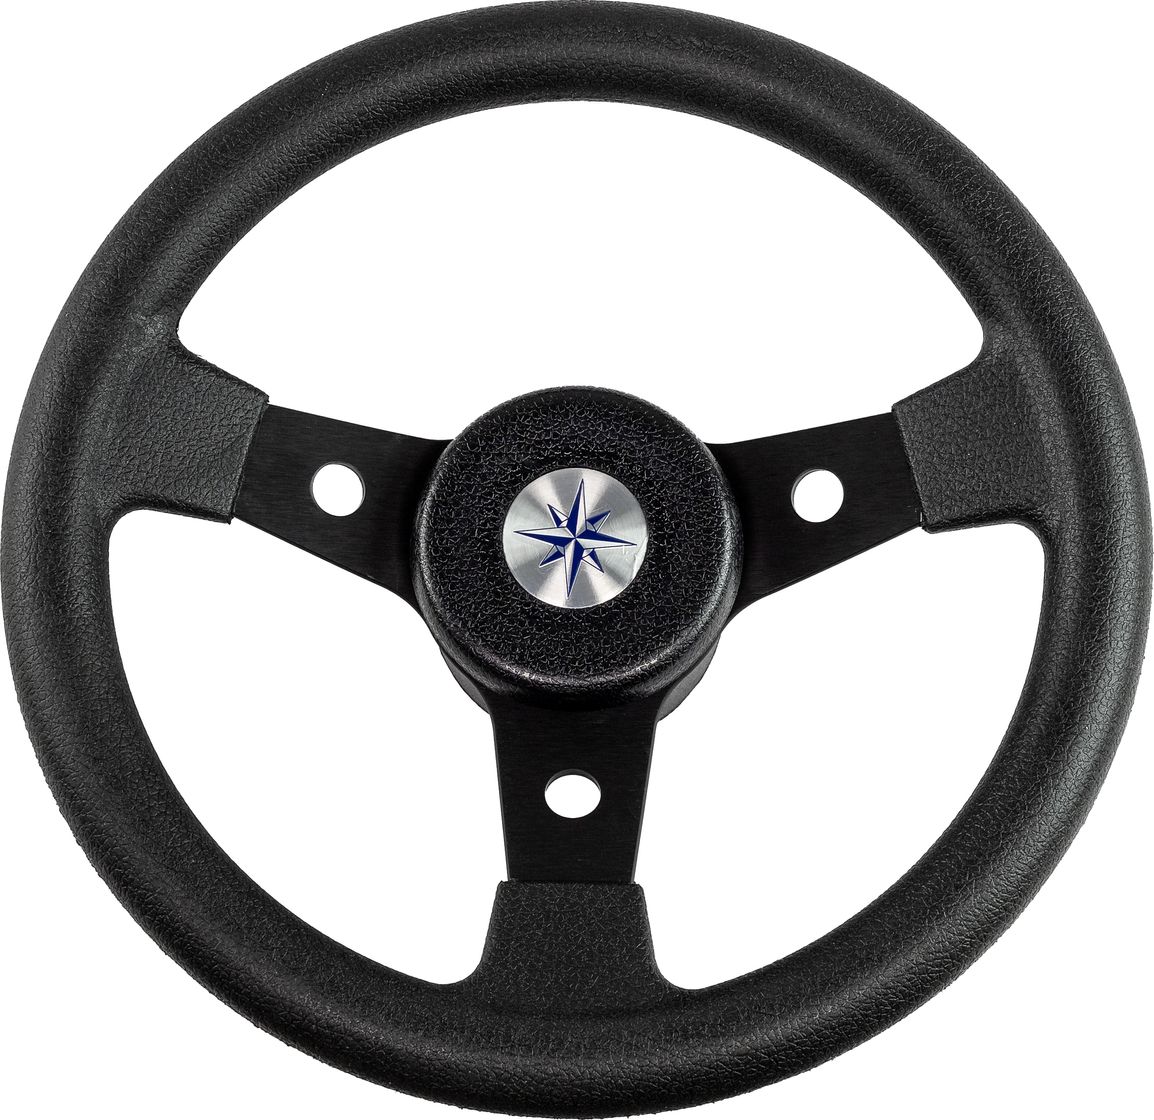 Рулевое колесо DELFINO обод и спицы черные д. 310 мм VN70104-01 рулевое колесо delfino обод спицы серебряные д 310 мм vn70103 01